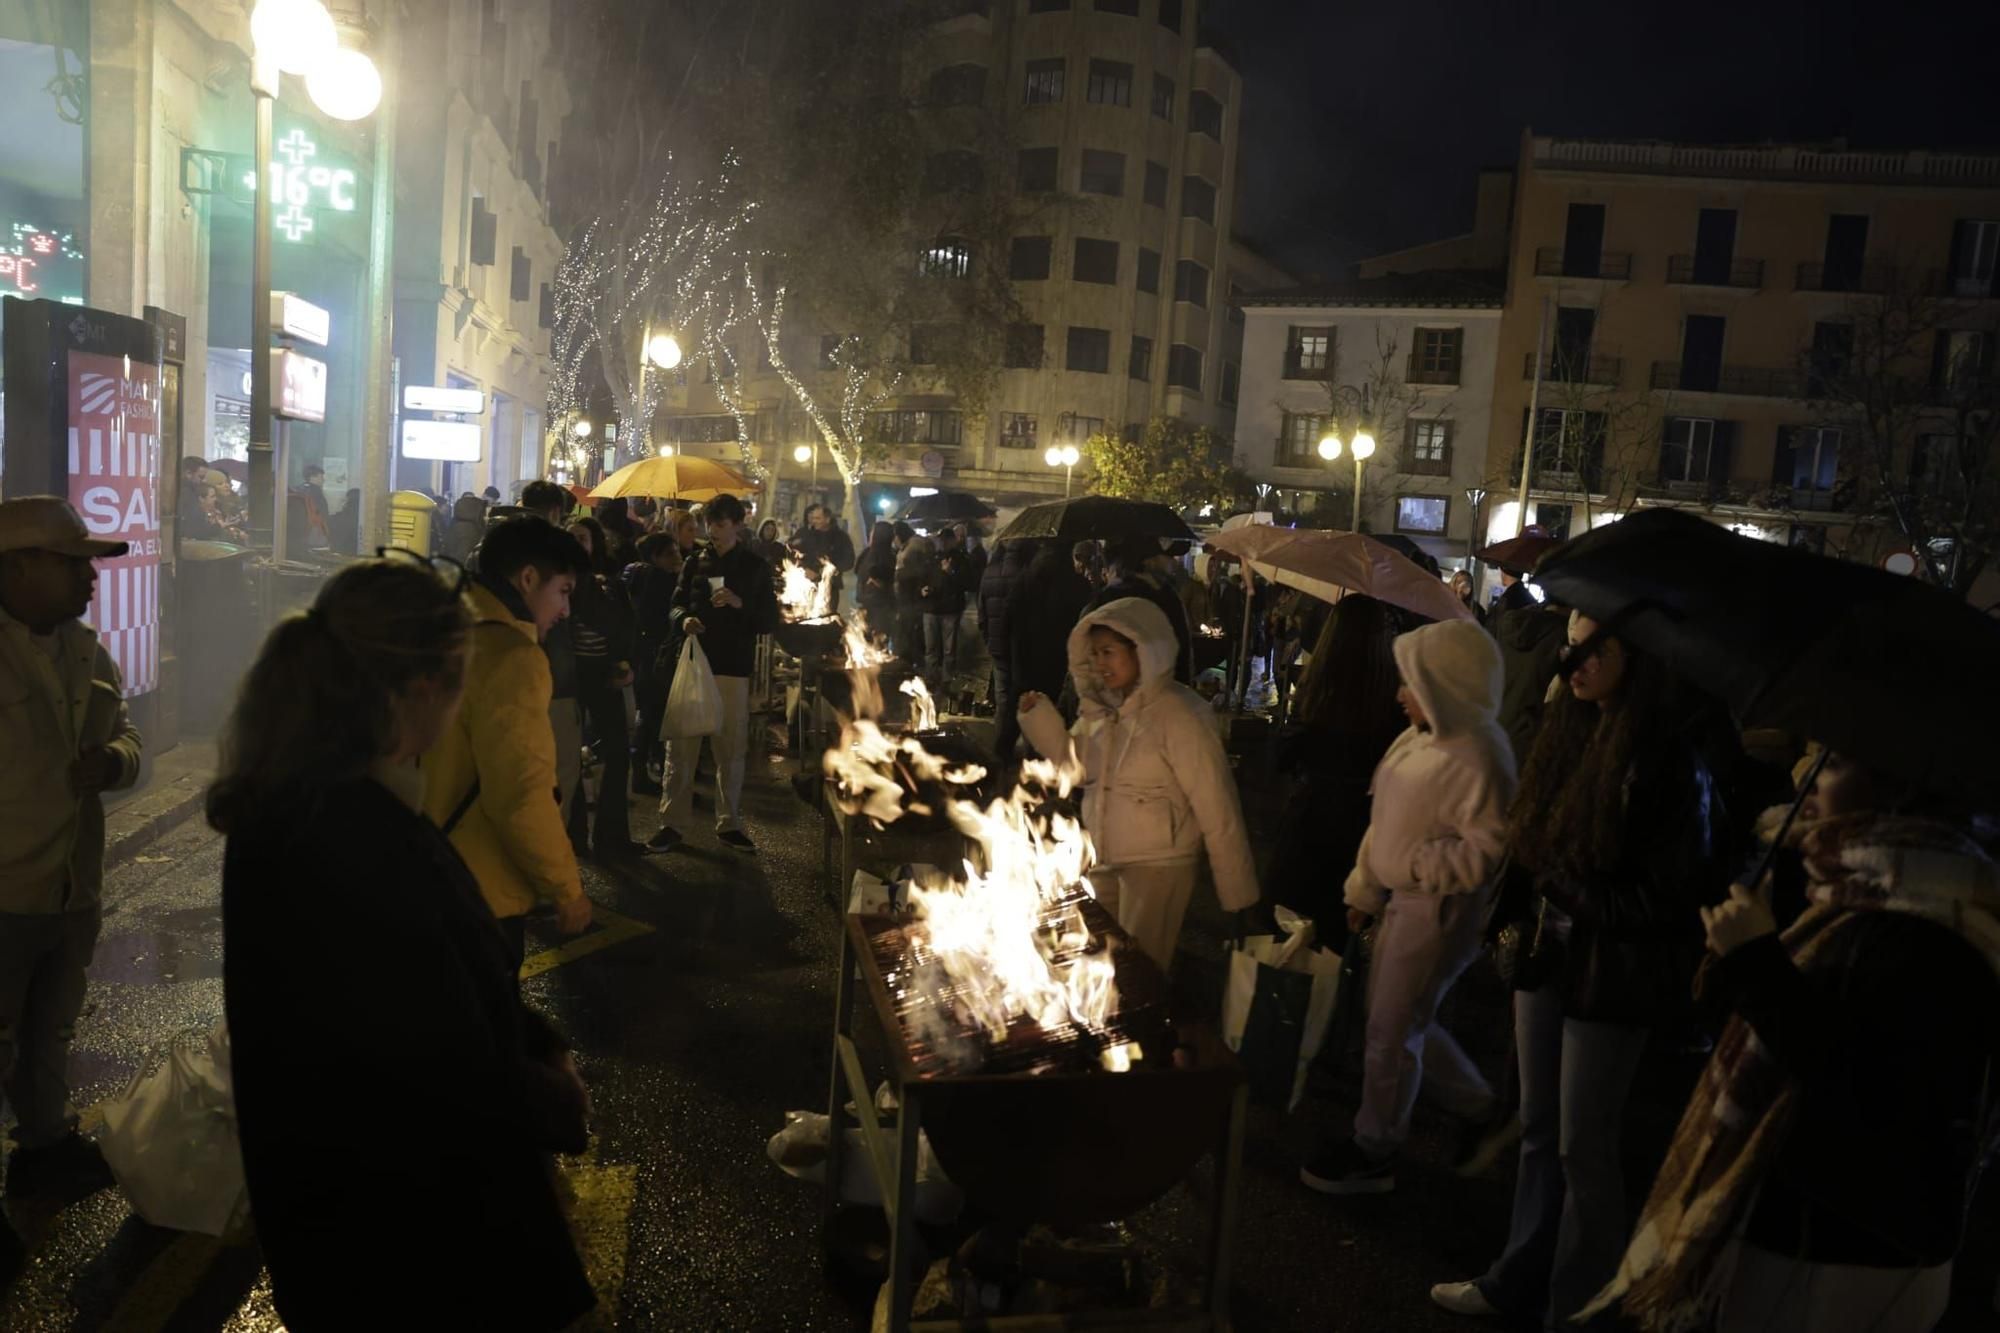 Grillen und feiern im Regen: So nass hat Palma das Fest zu Sant Sebastià eingeläutet